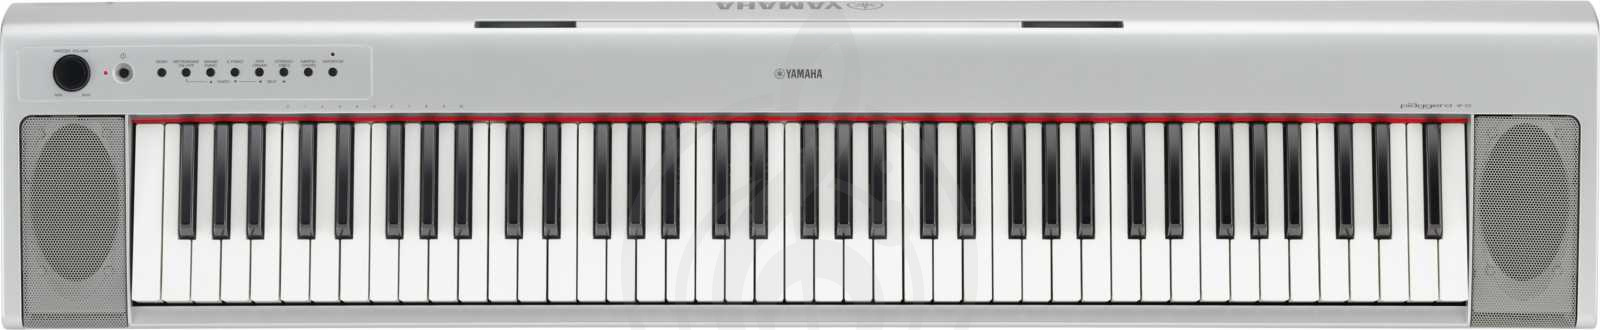 Цифровое пианино Цифровые пианино Yamaha YAMAHA NP-31S цифровое пианино NP-31S - фото 1